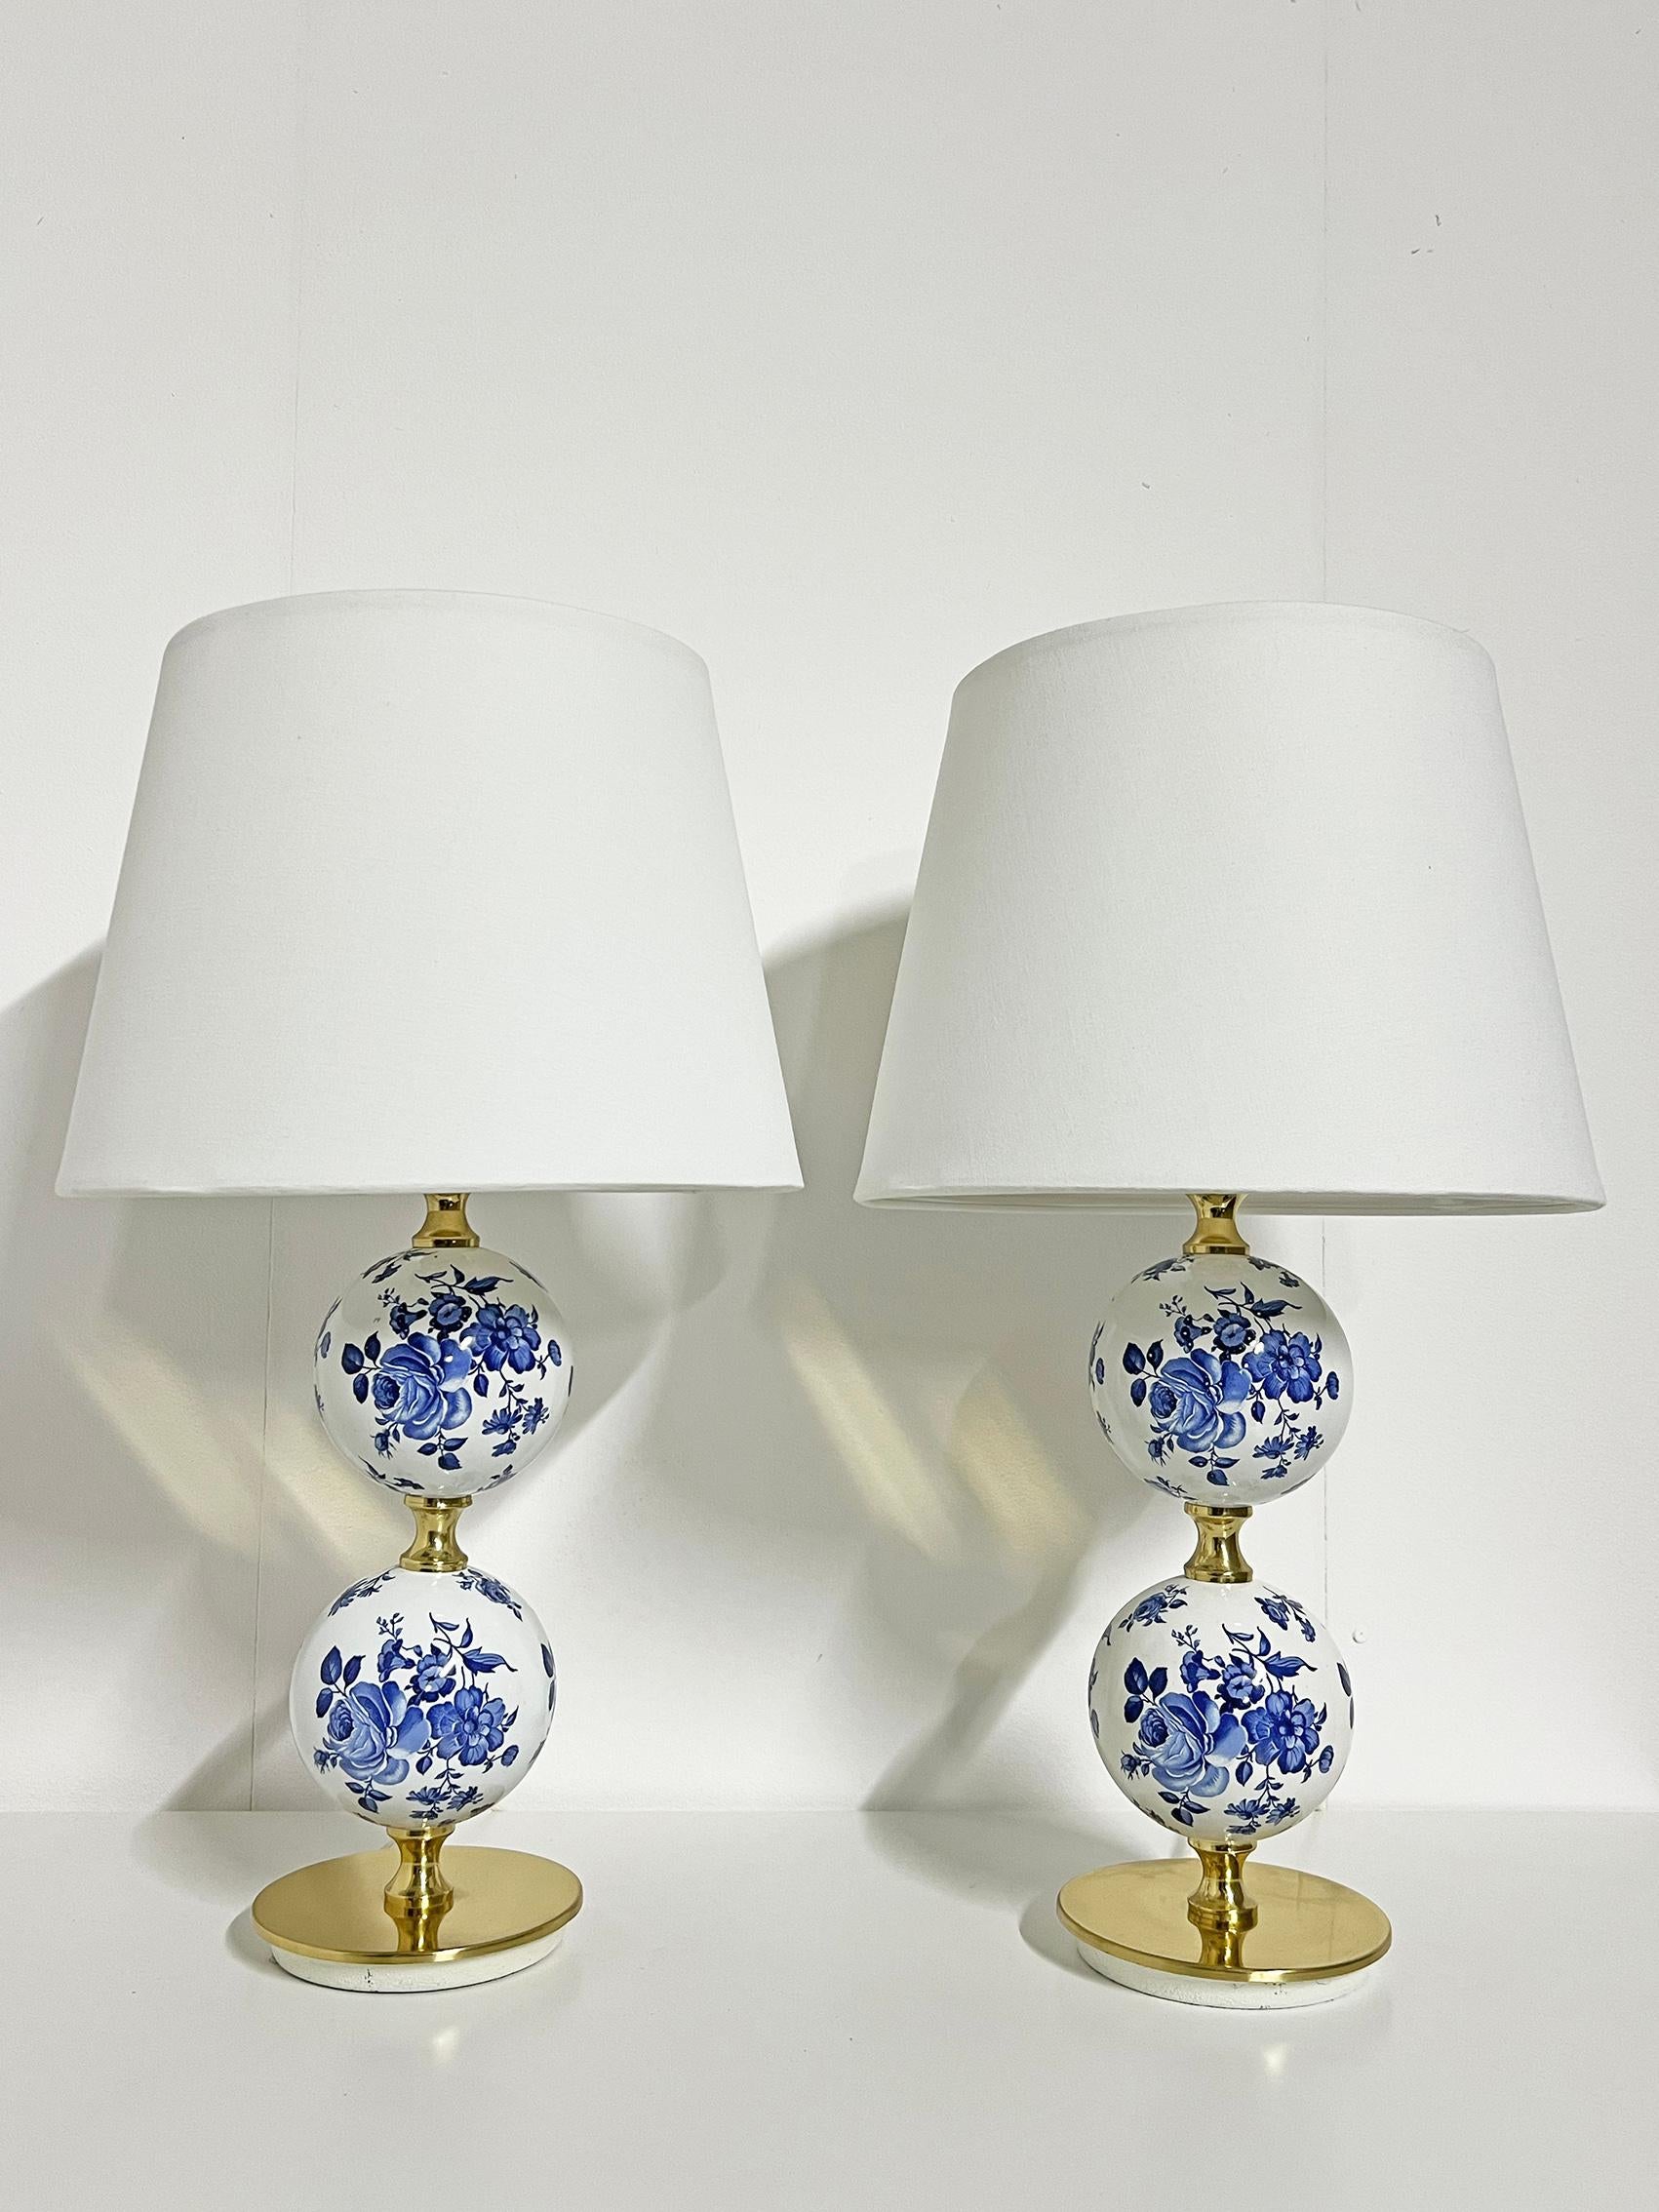 Paar schöne skandinavische moderne Tischlampen, Tranås Stilarmatur ca. 1960er Jahre.
Seltenes Modell aus Porzellan und Messing mit schönem floralem Muster. 
Signiert mit Herstellerzeichen.
Guter Vintage-Zustand, Abnutzung und Patina im Einklang mit